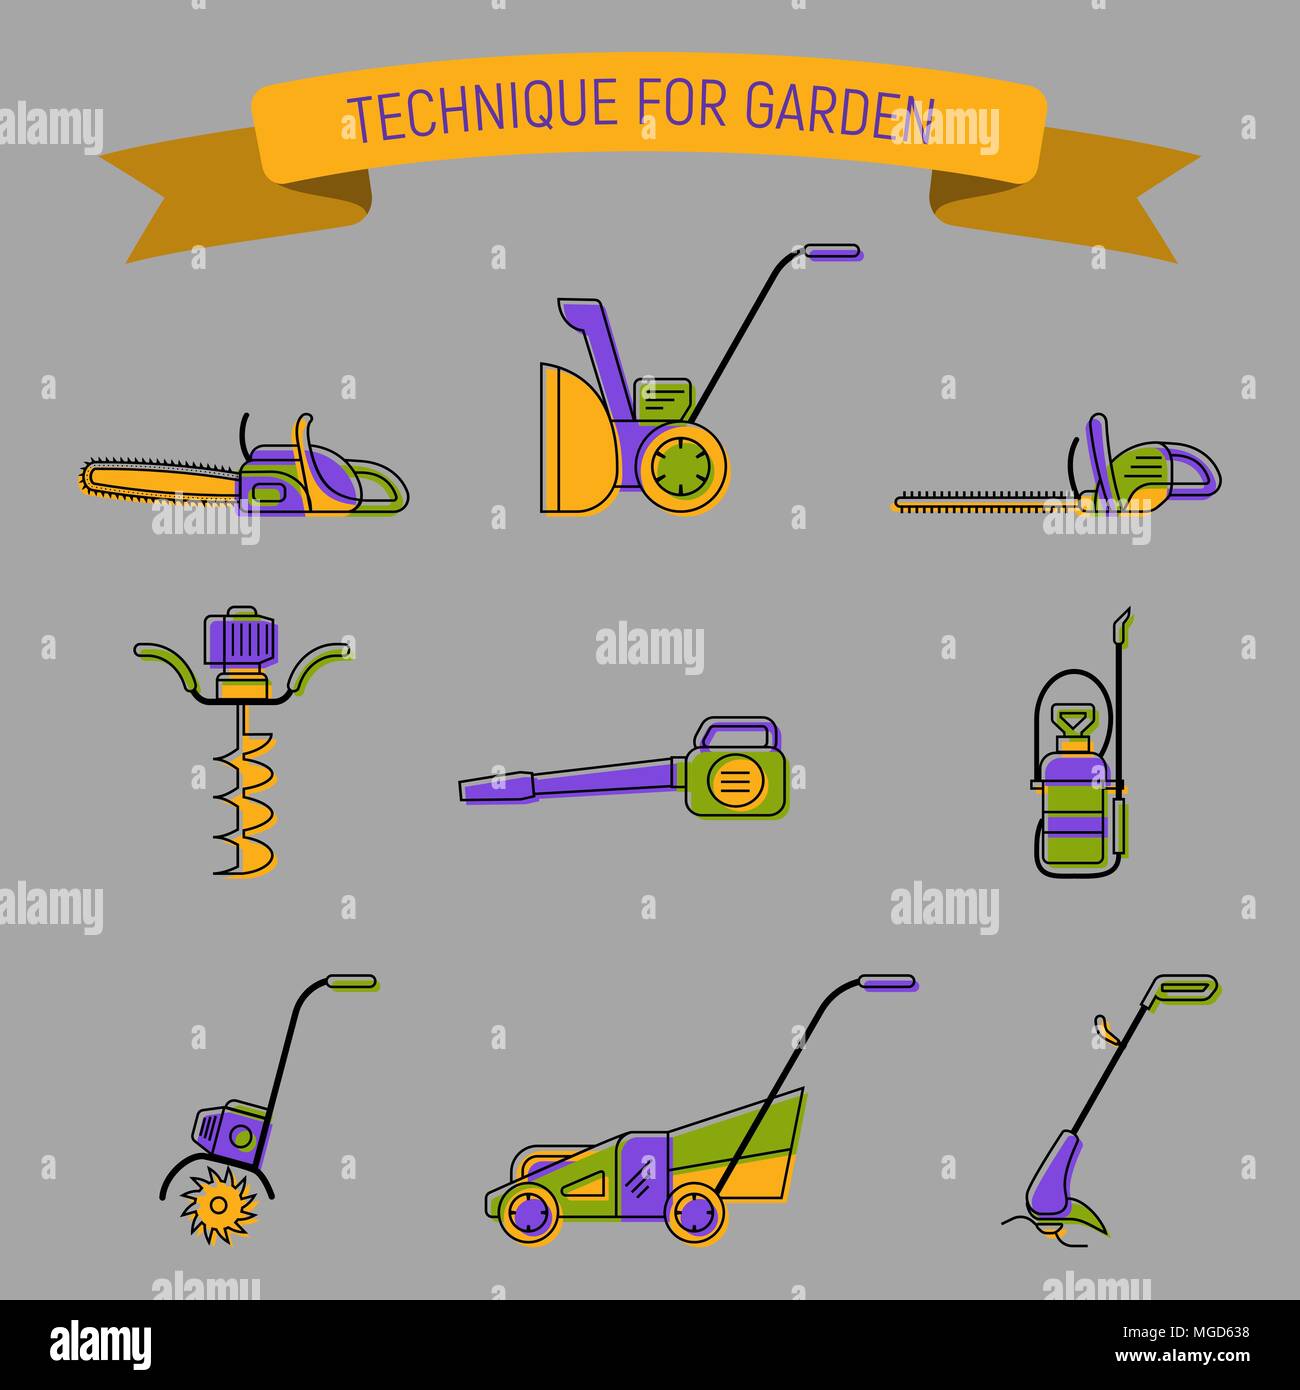 Las insignias de la jardinería power tools. Técnica para el cuidado del césped y jardín Ilustración del Vector